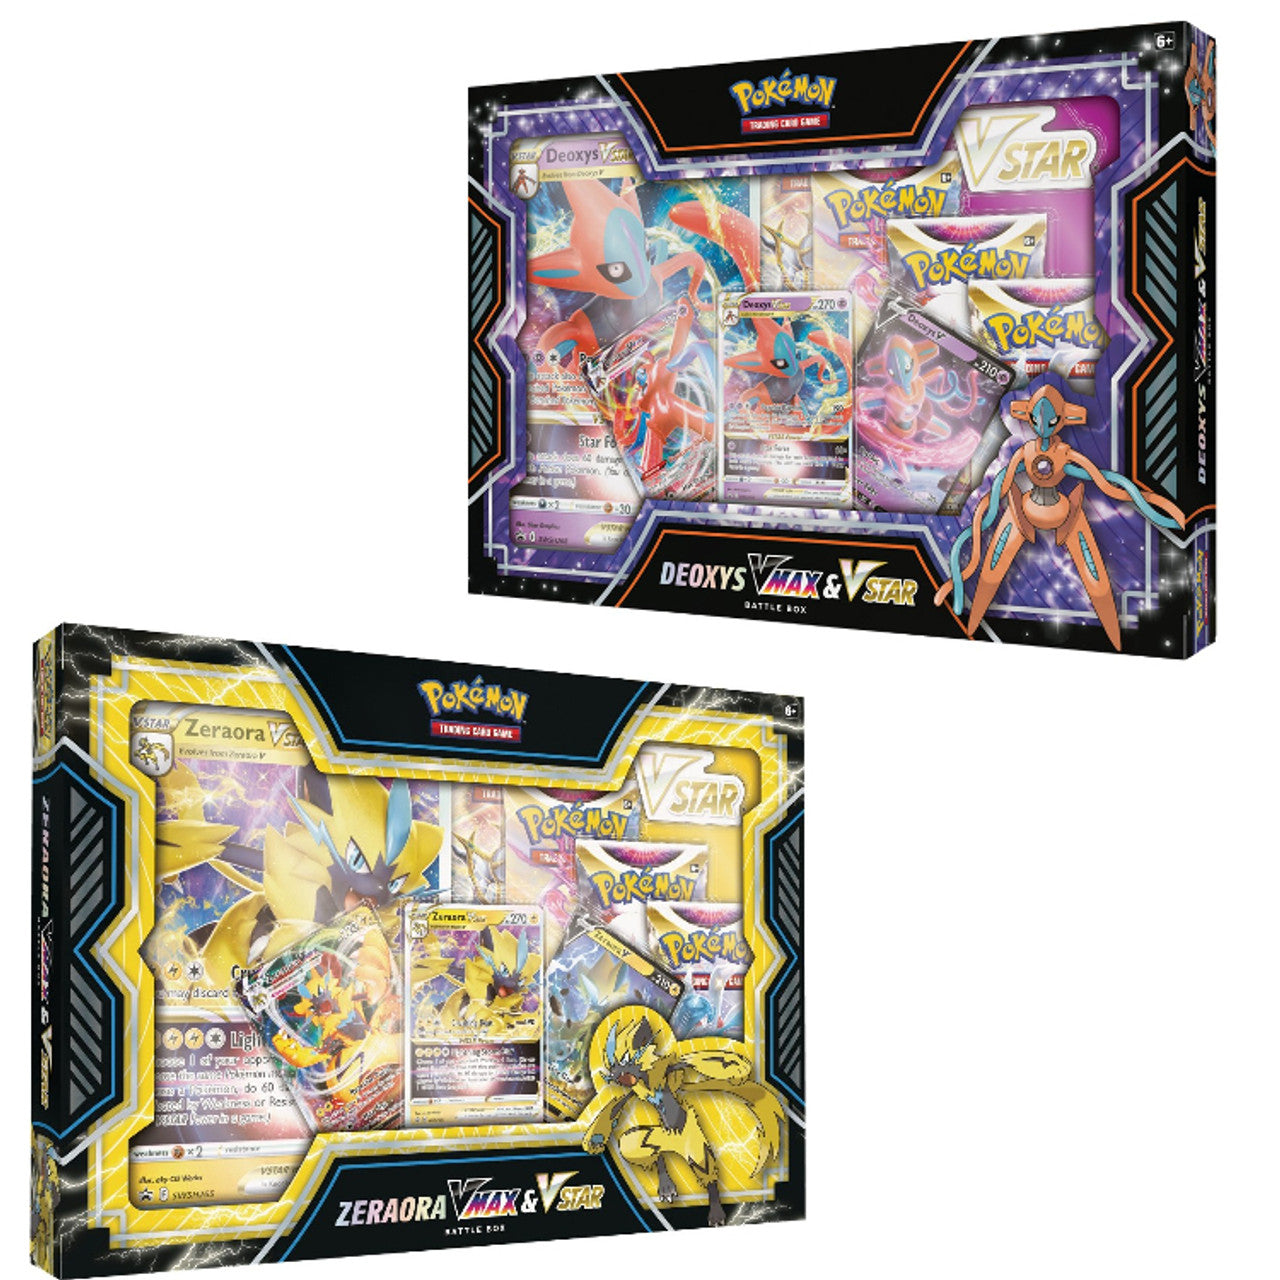 Pokémon TCG - Deoxys/Zeraora VMAX & VSTAR Battle Box (Inglés)